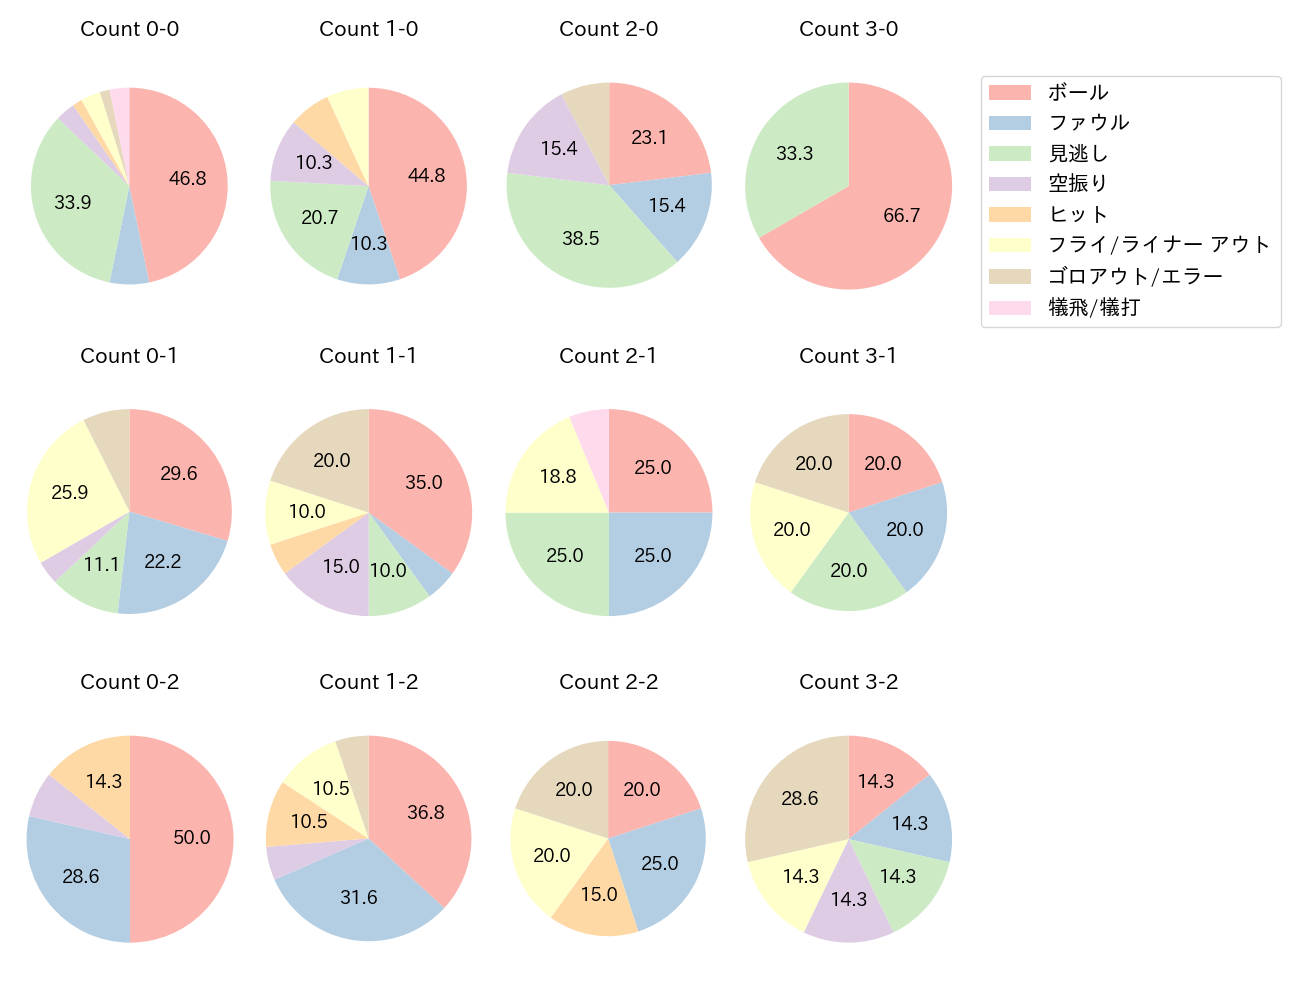 佐藤 都志也の球数分布(2022年6月)